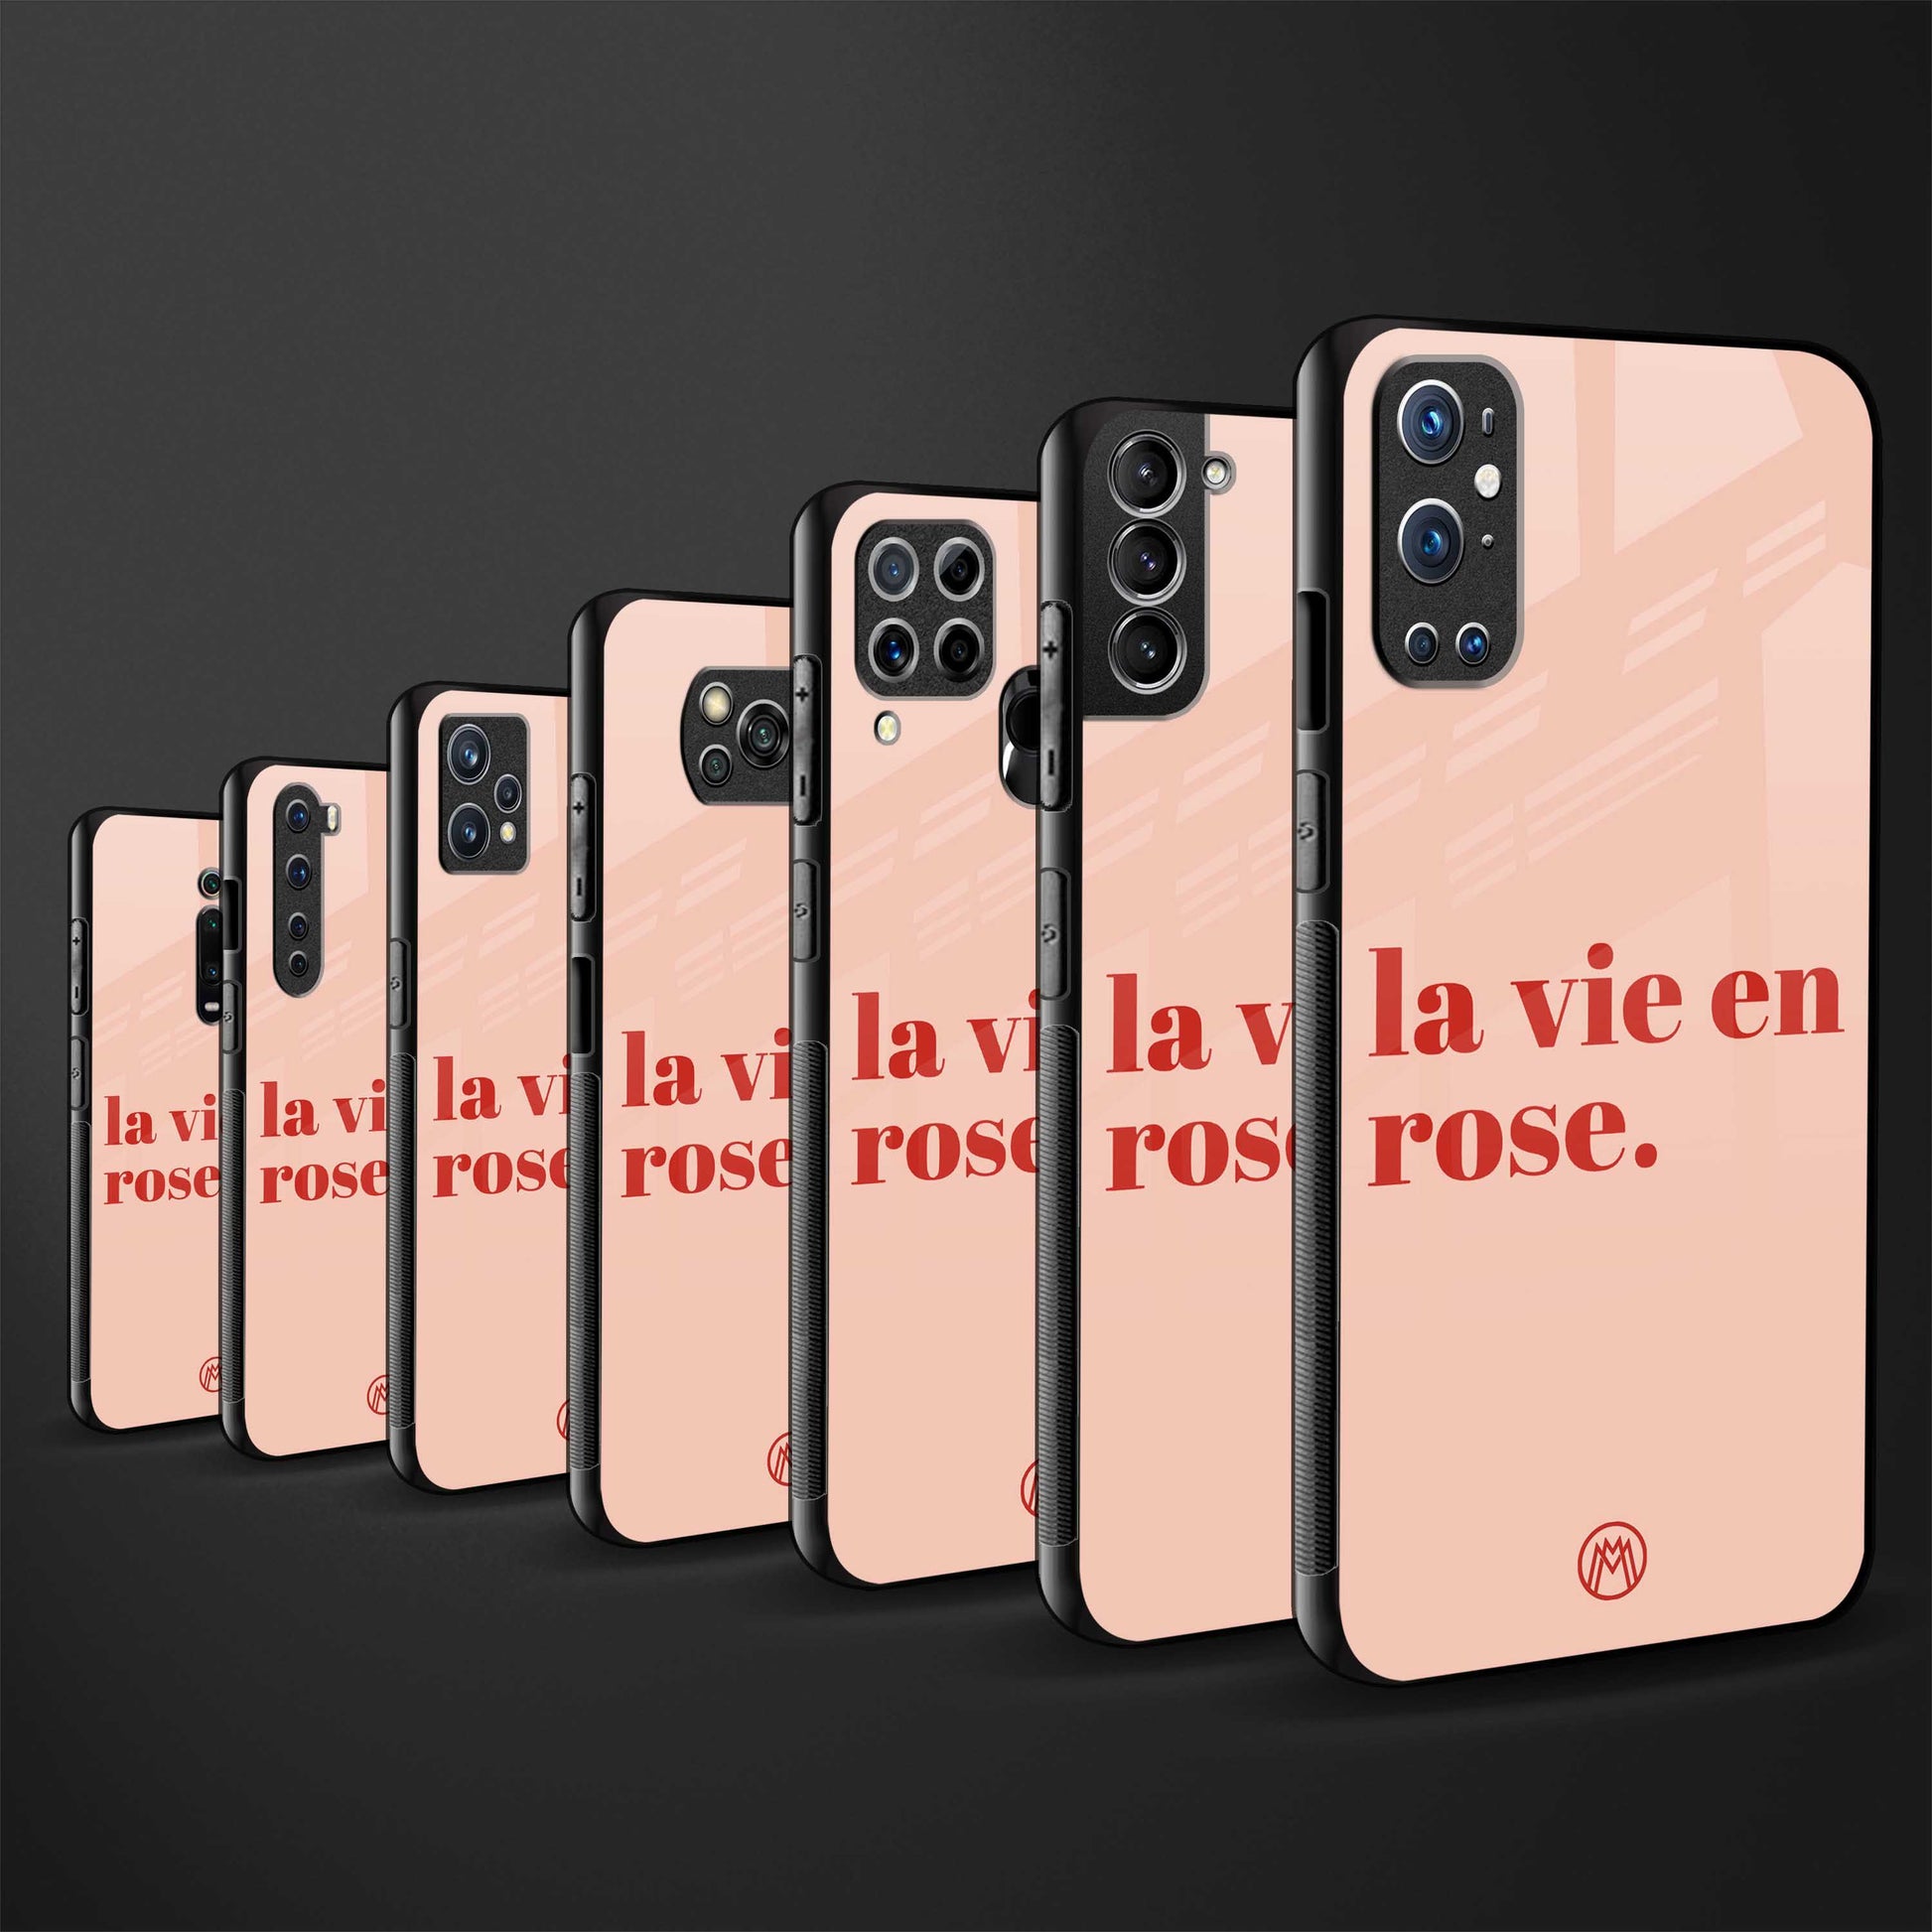 la vie en rose quote glass case for iphone 13 image-3